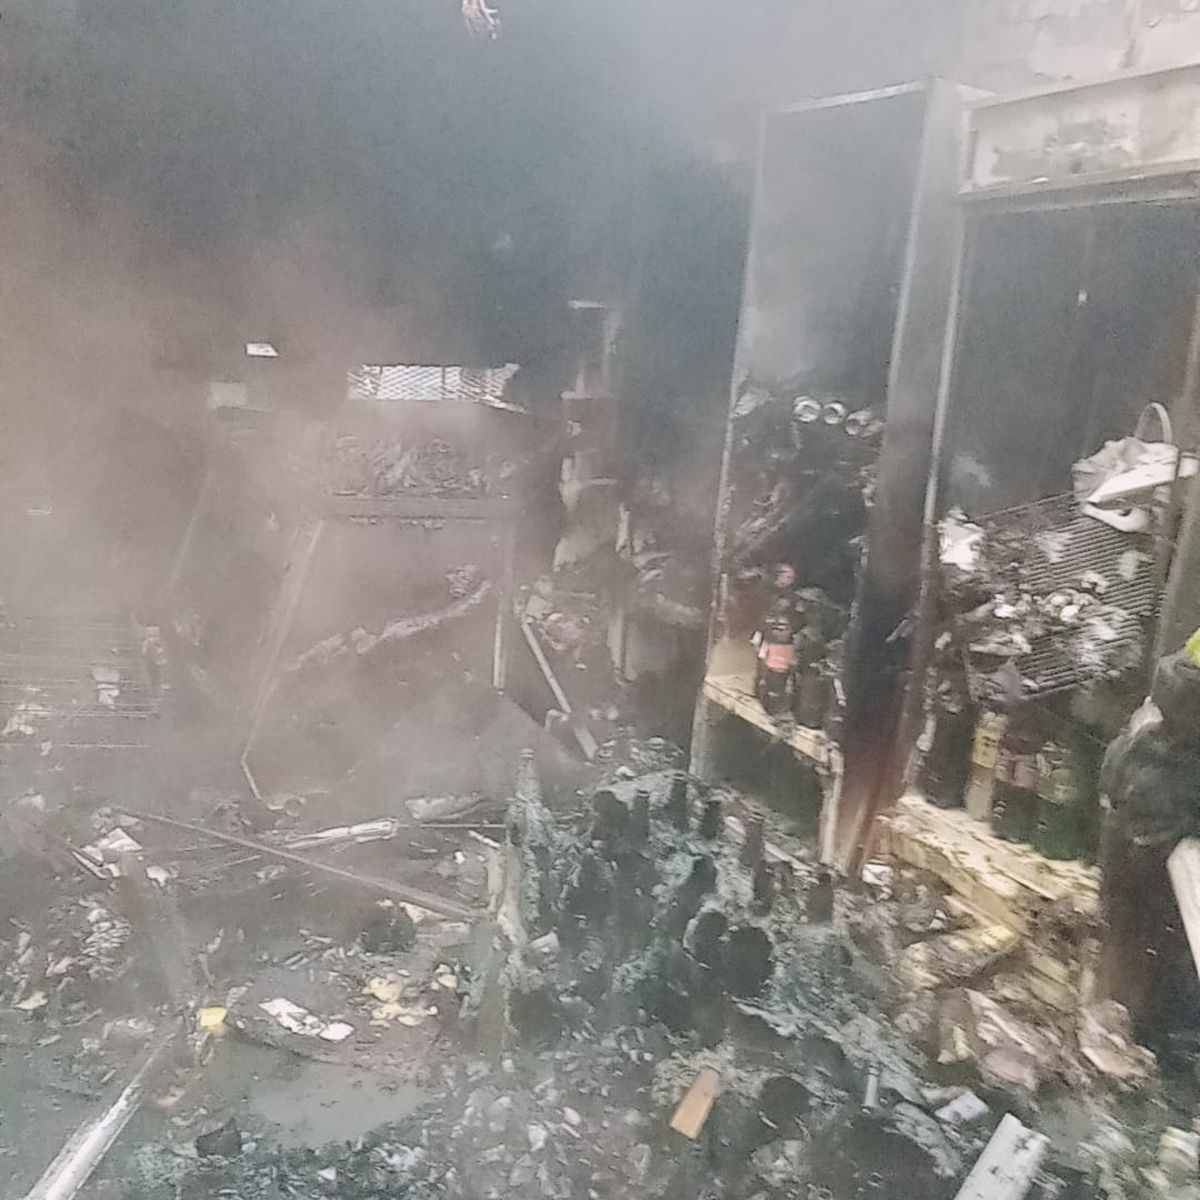 Feroz incendio destruyó una casa en Monte Grande